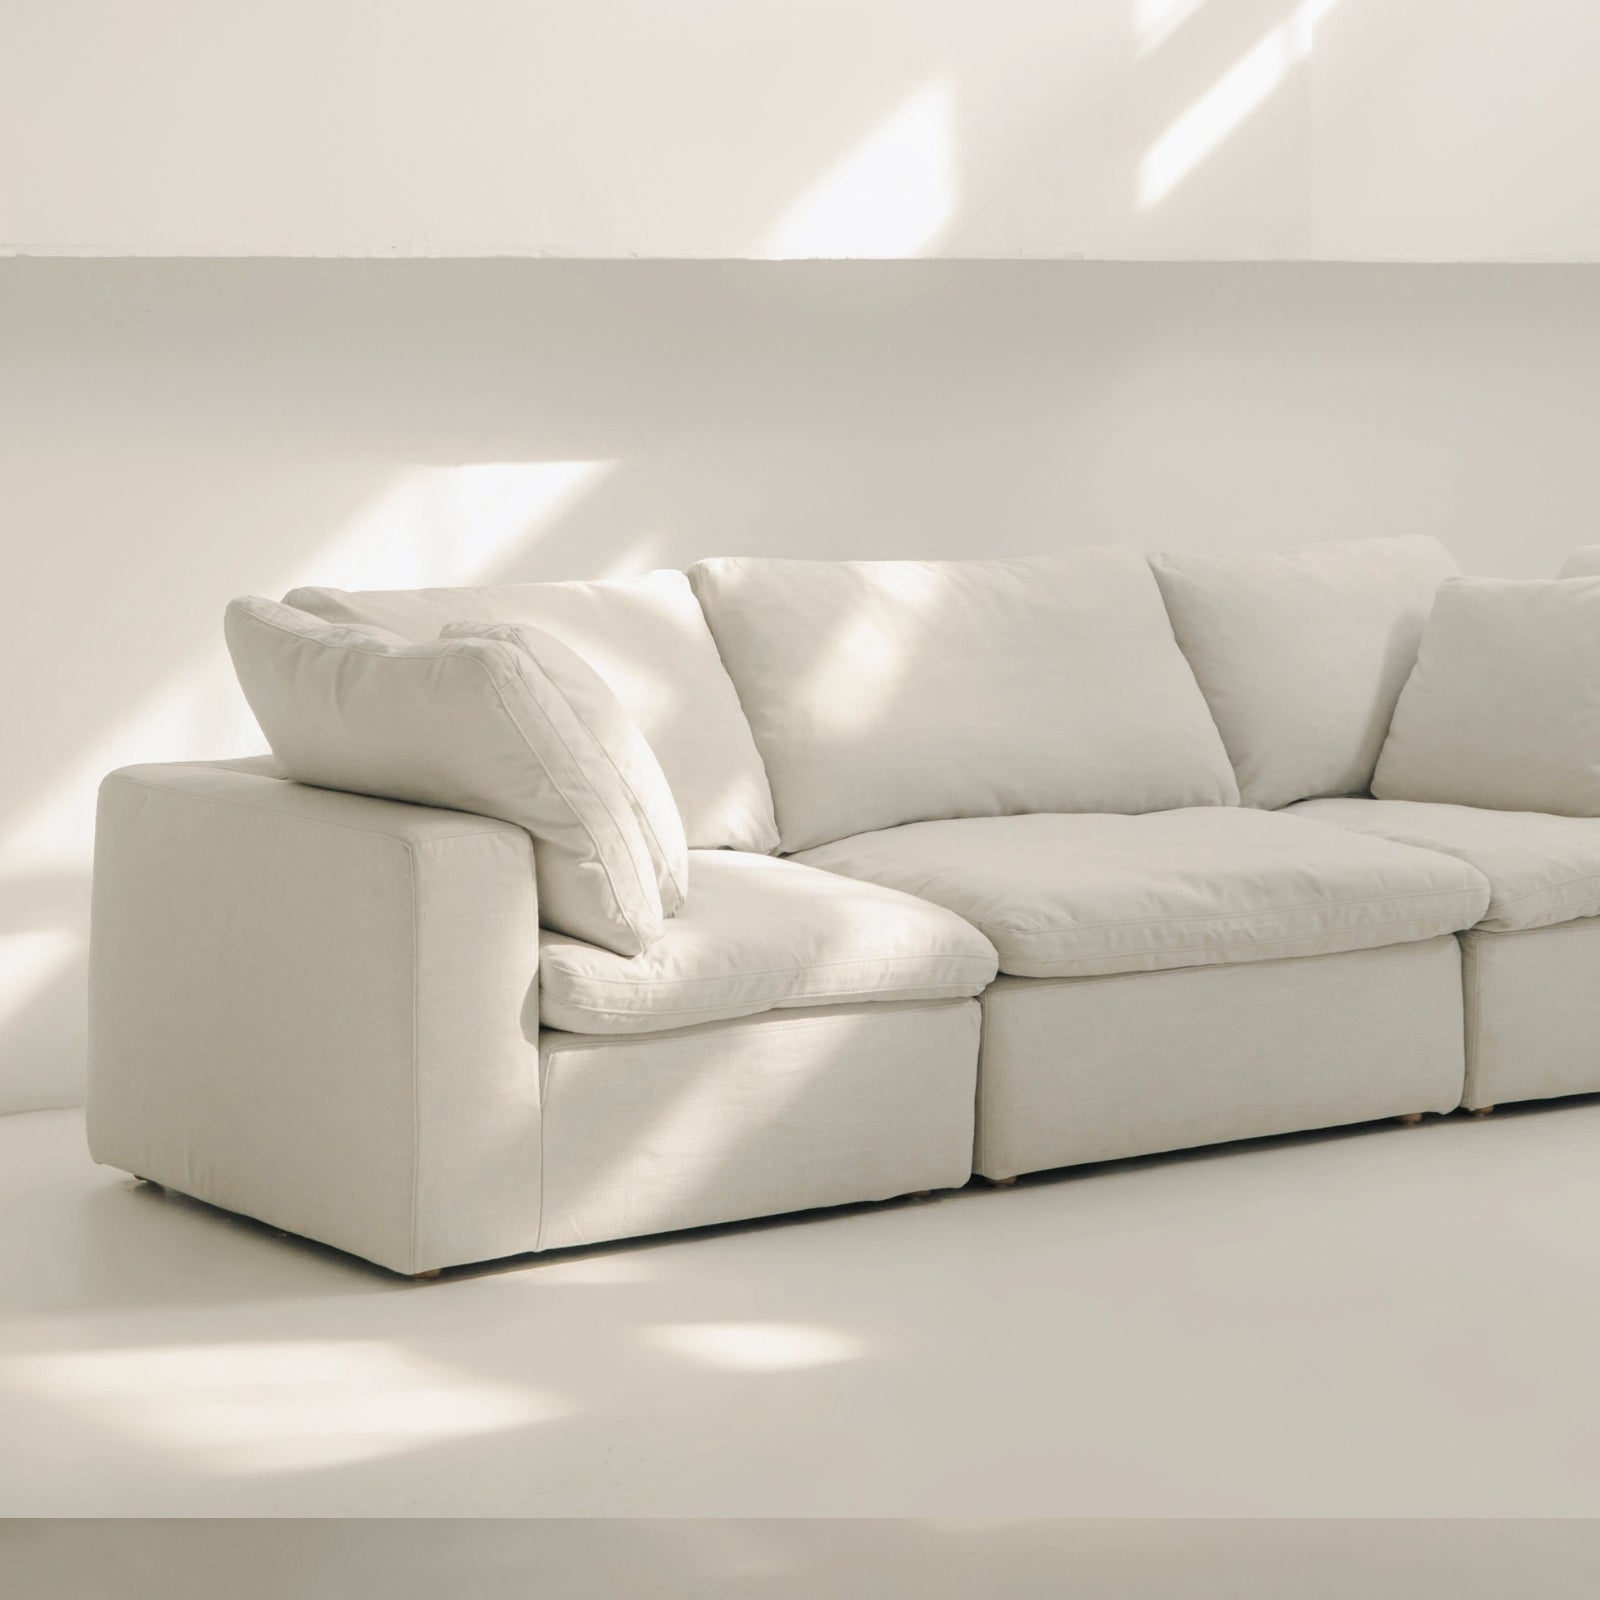 Movie Night™ 3-Piece Modular Sofa, Large, Clay - Image 13